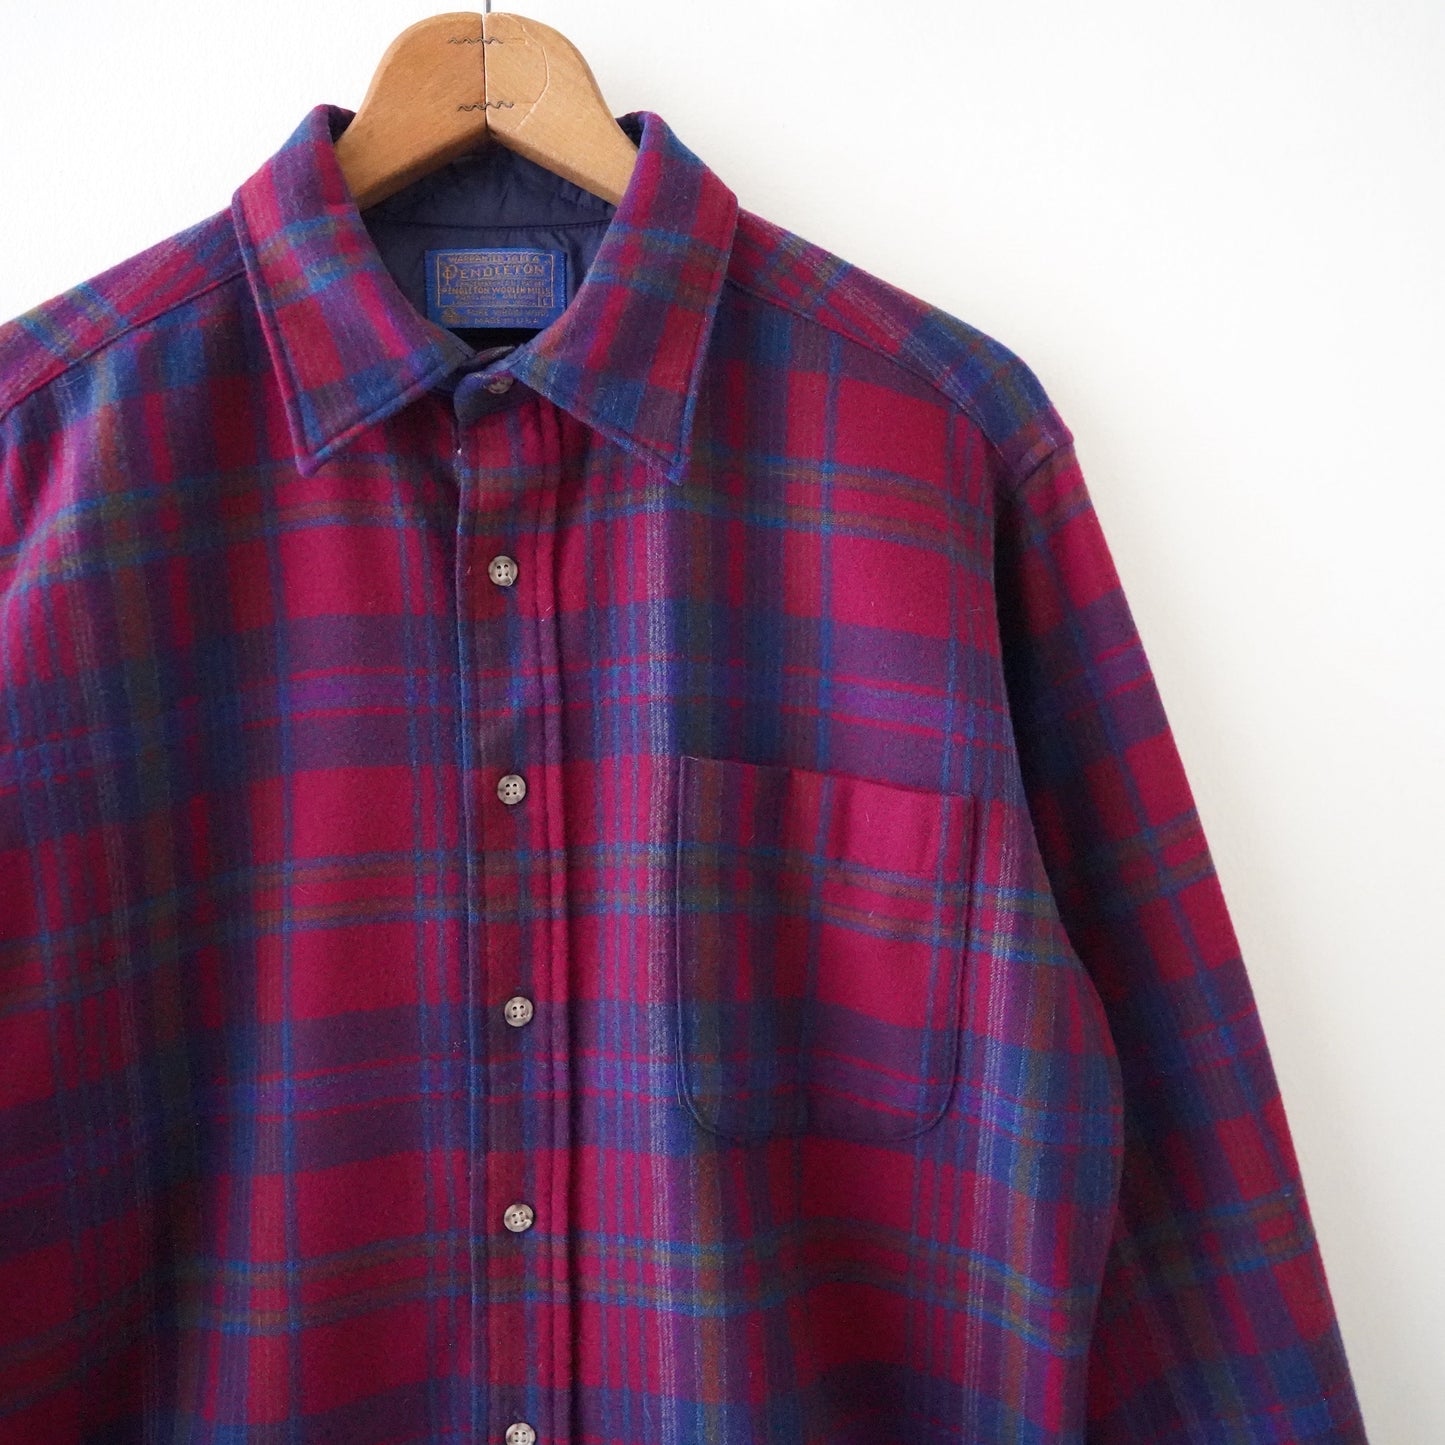 70s Pendleton wool plaid shirt